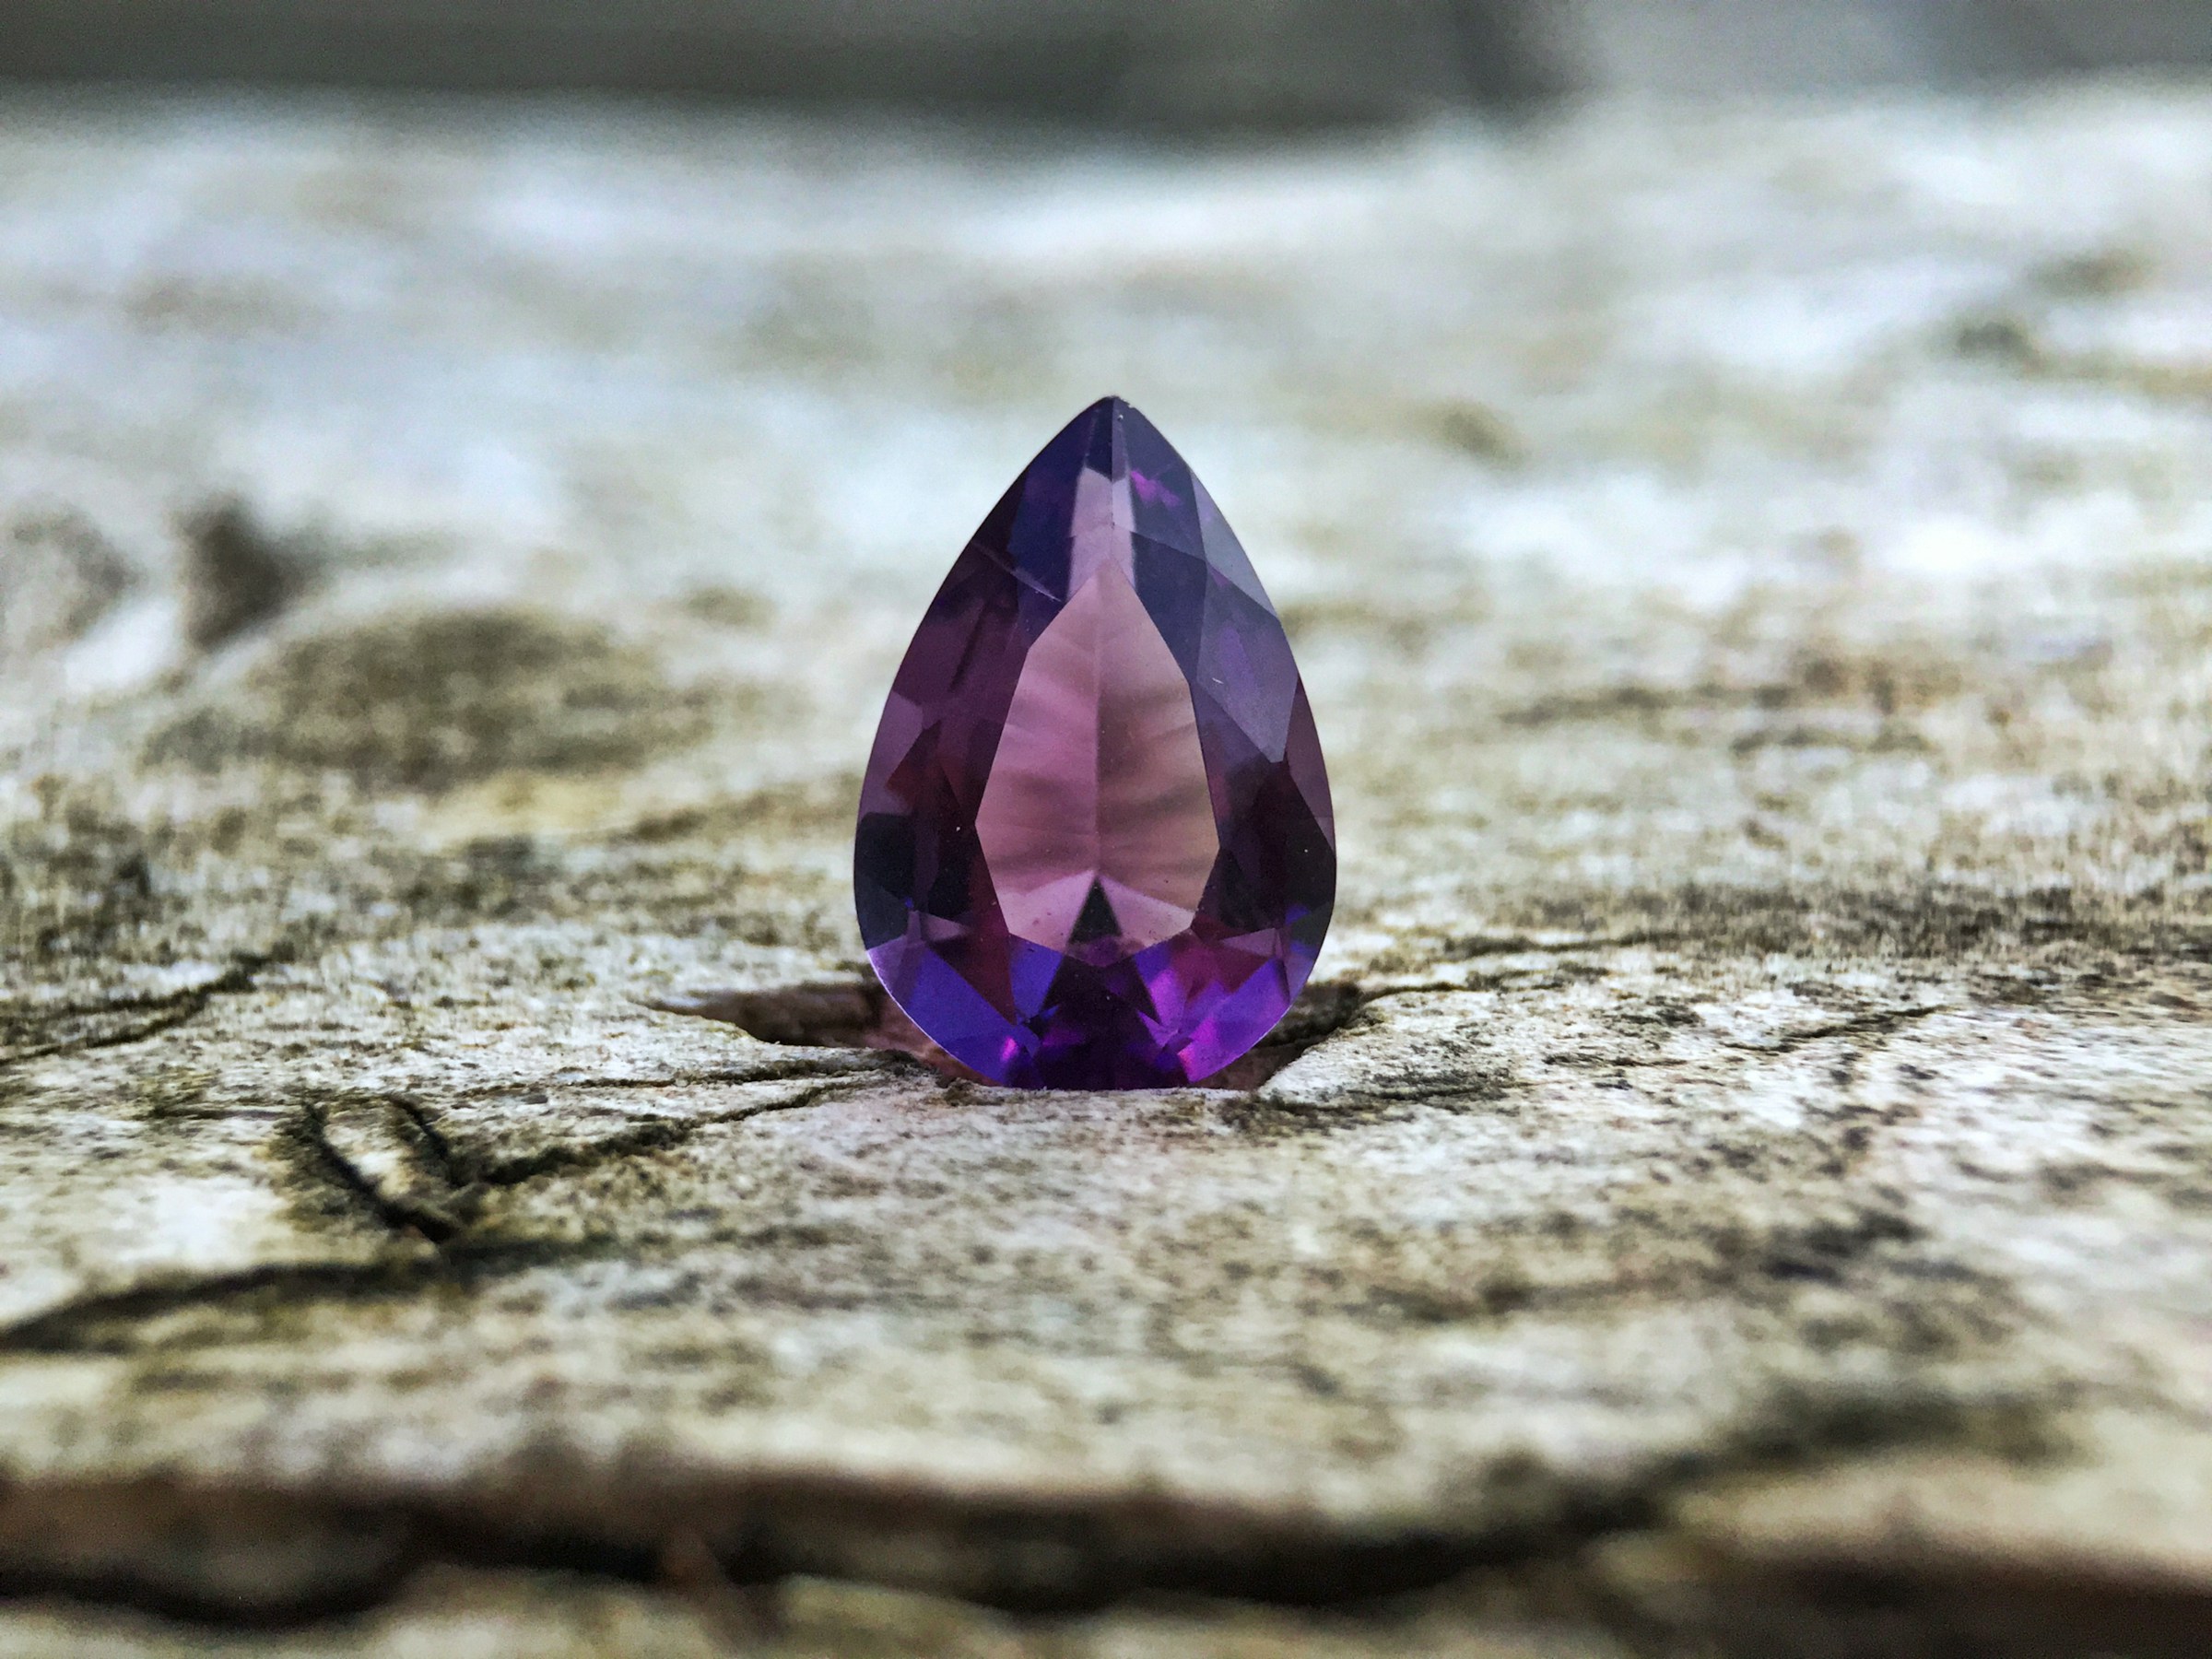 A teardrop-shaped amethyst stone | Source: Unsplash